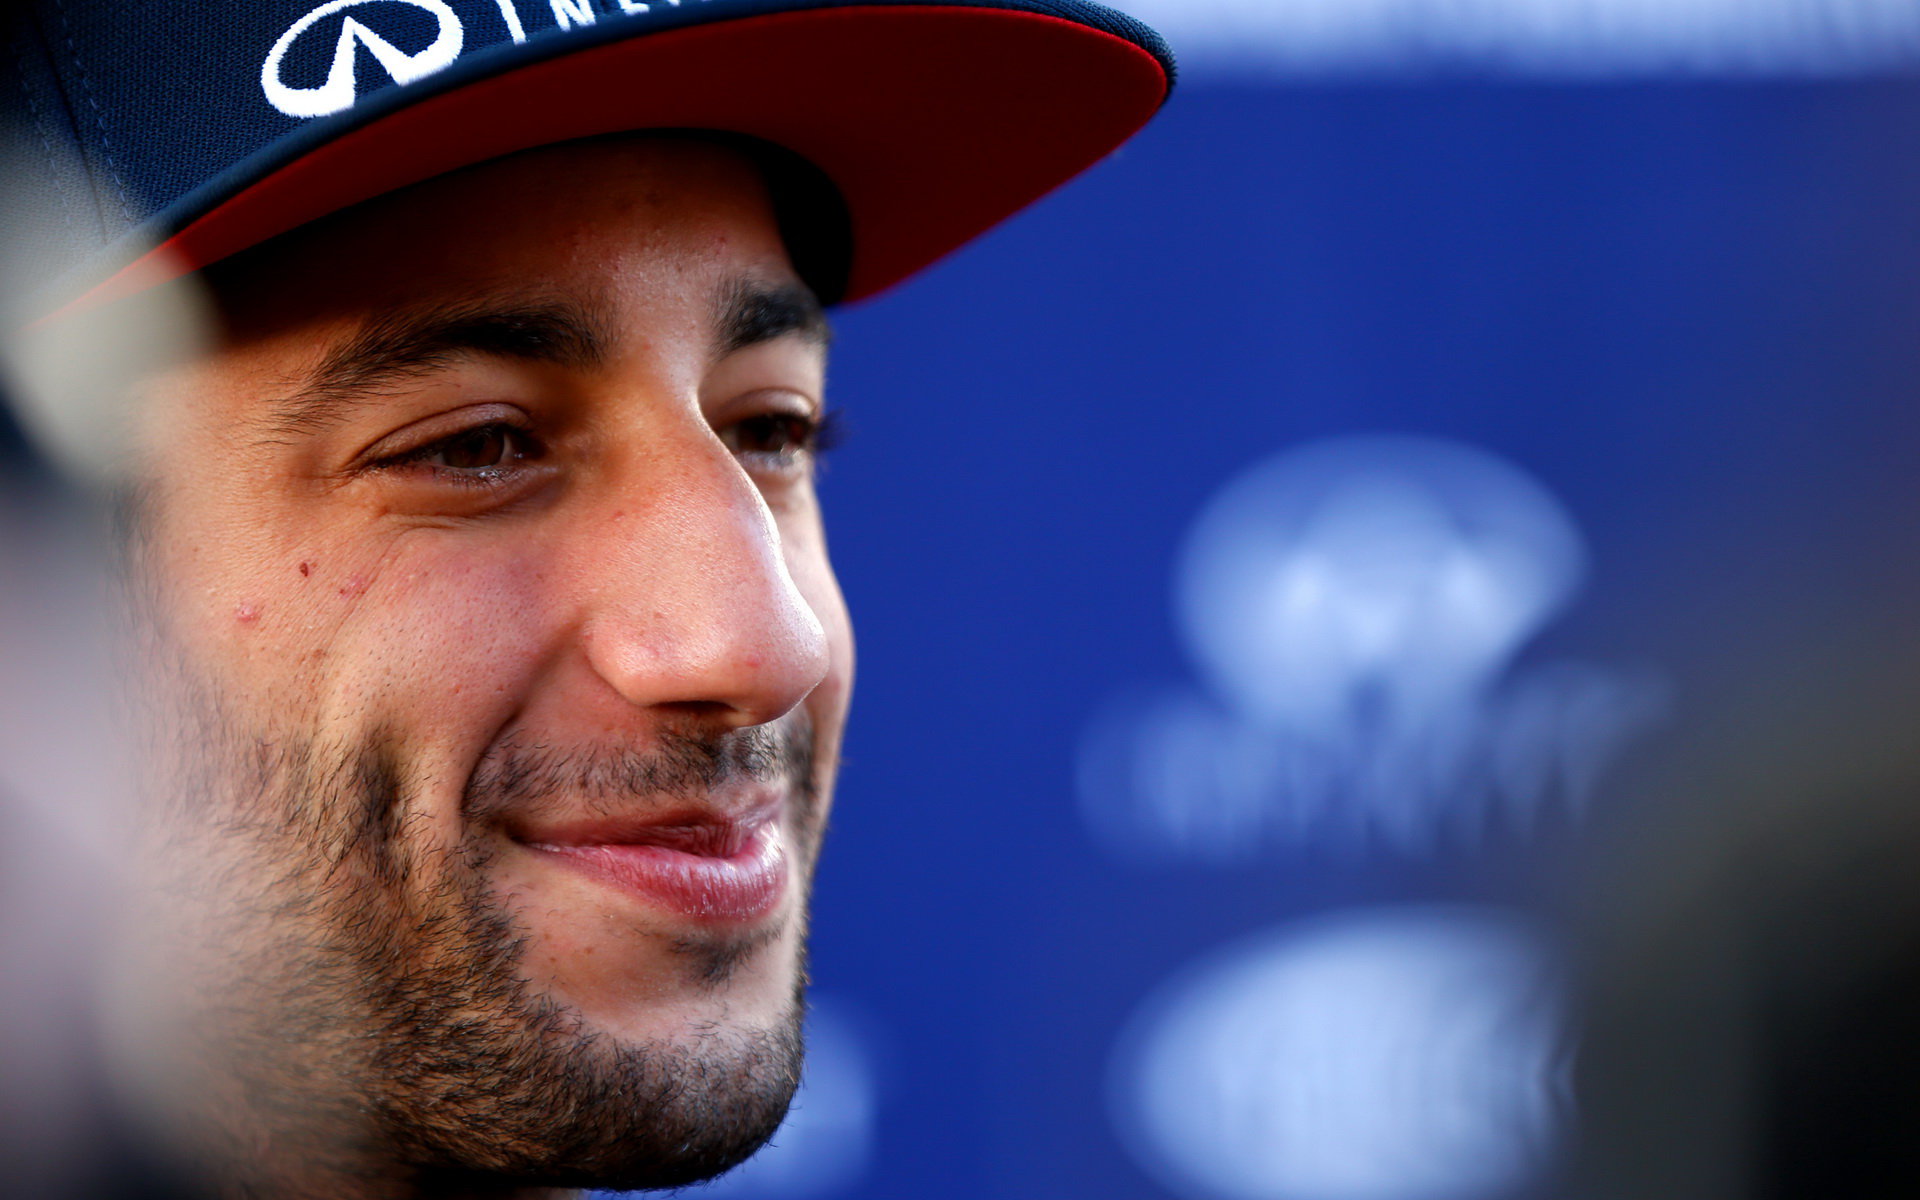 Daniel Ricciardo v Soči